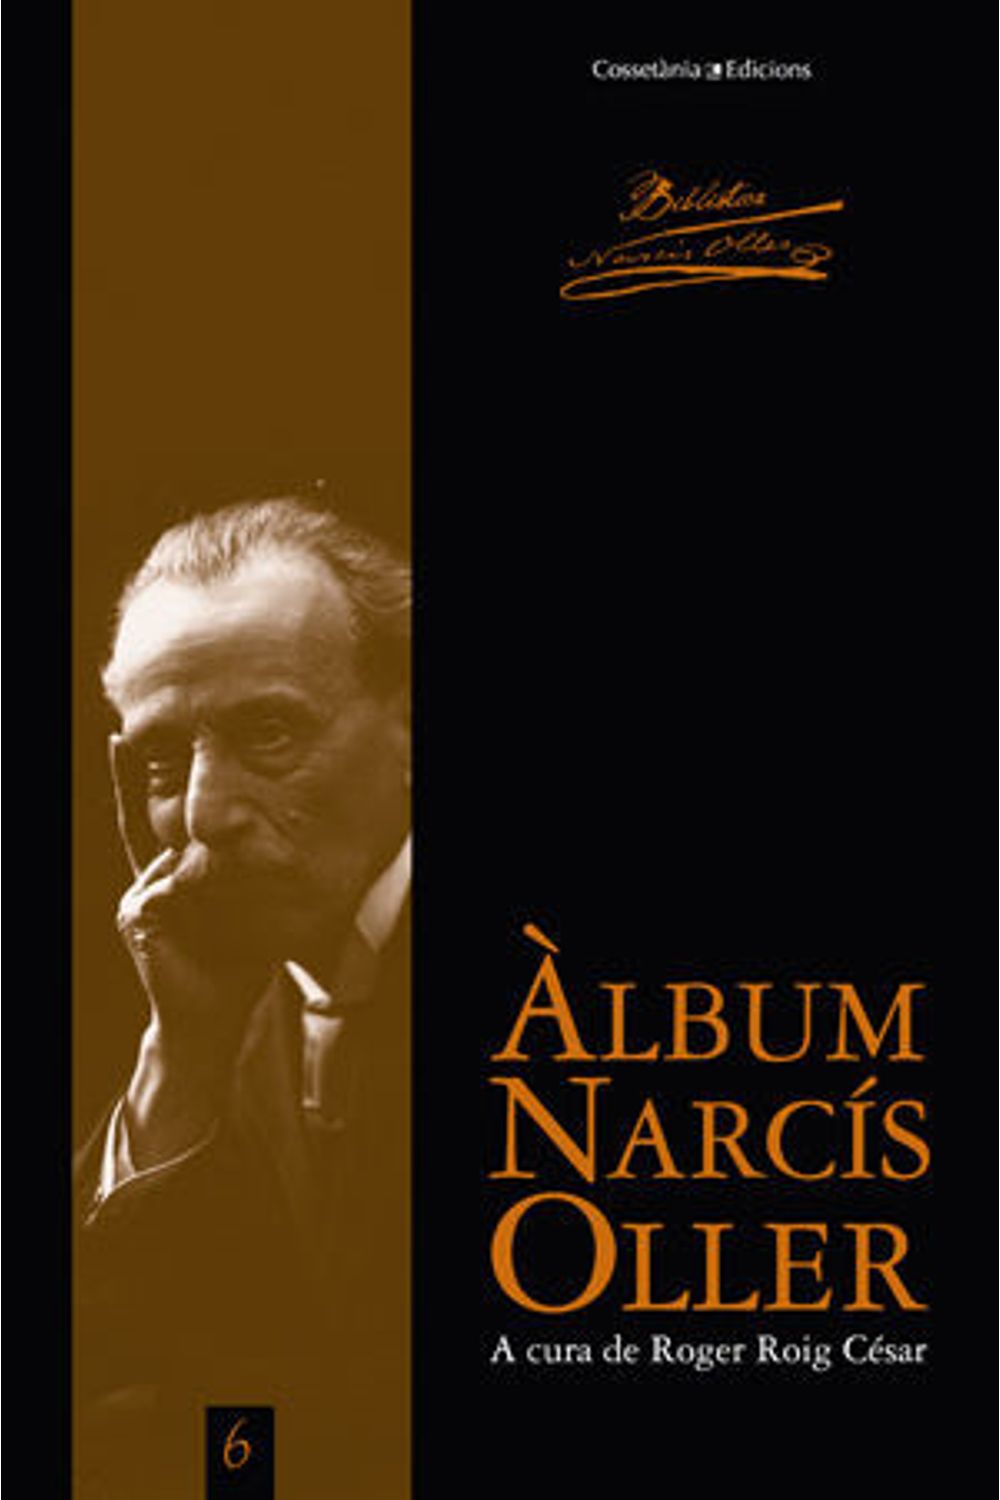 Album Narcis Oller